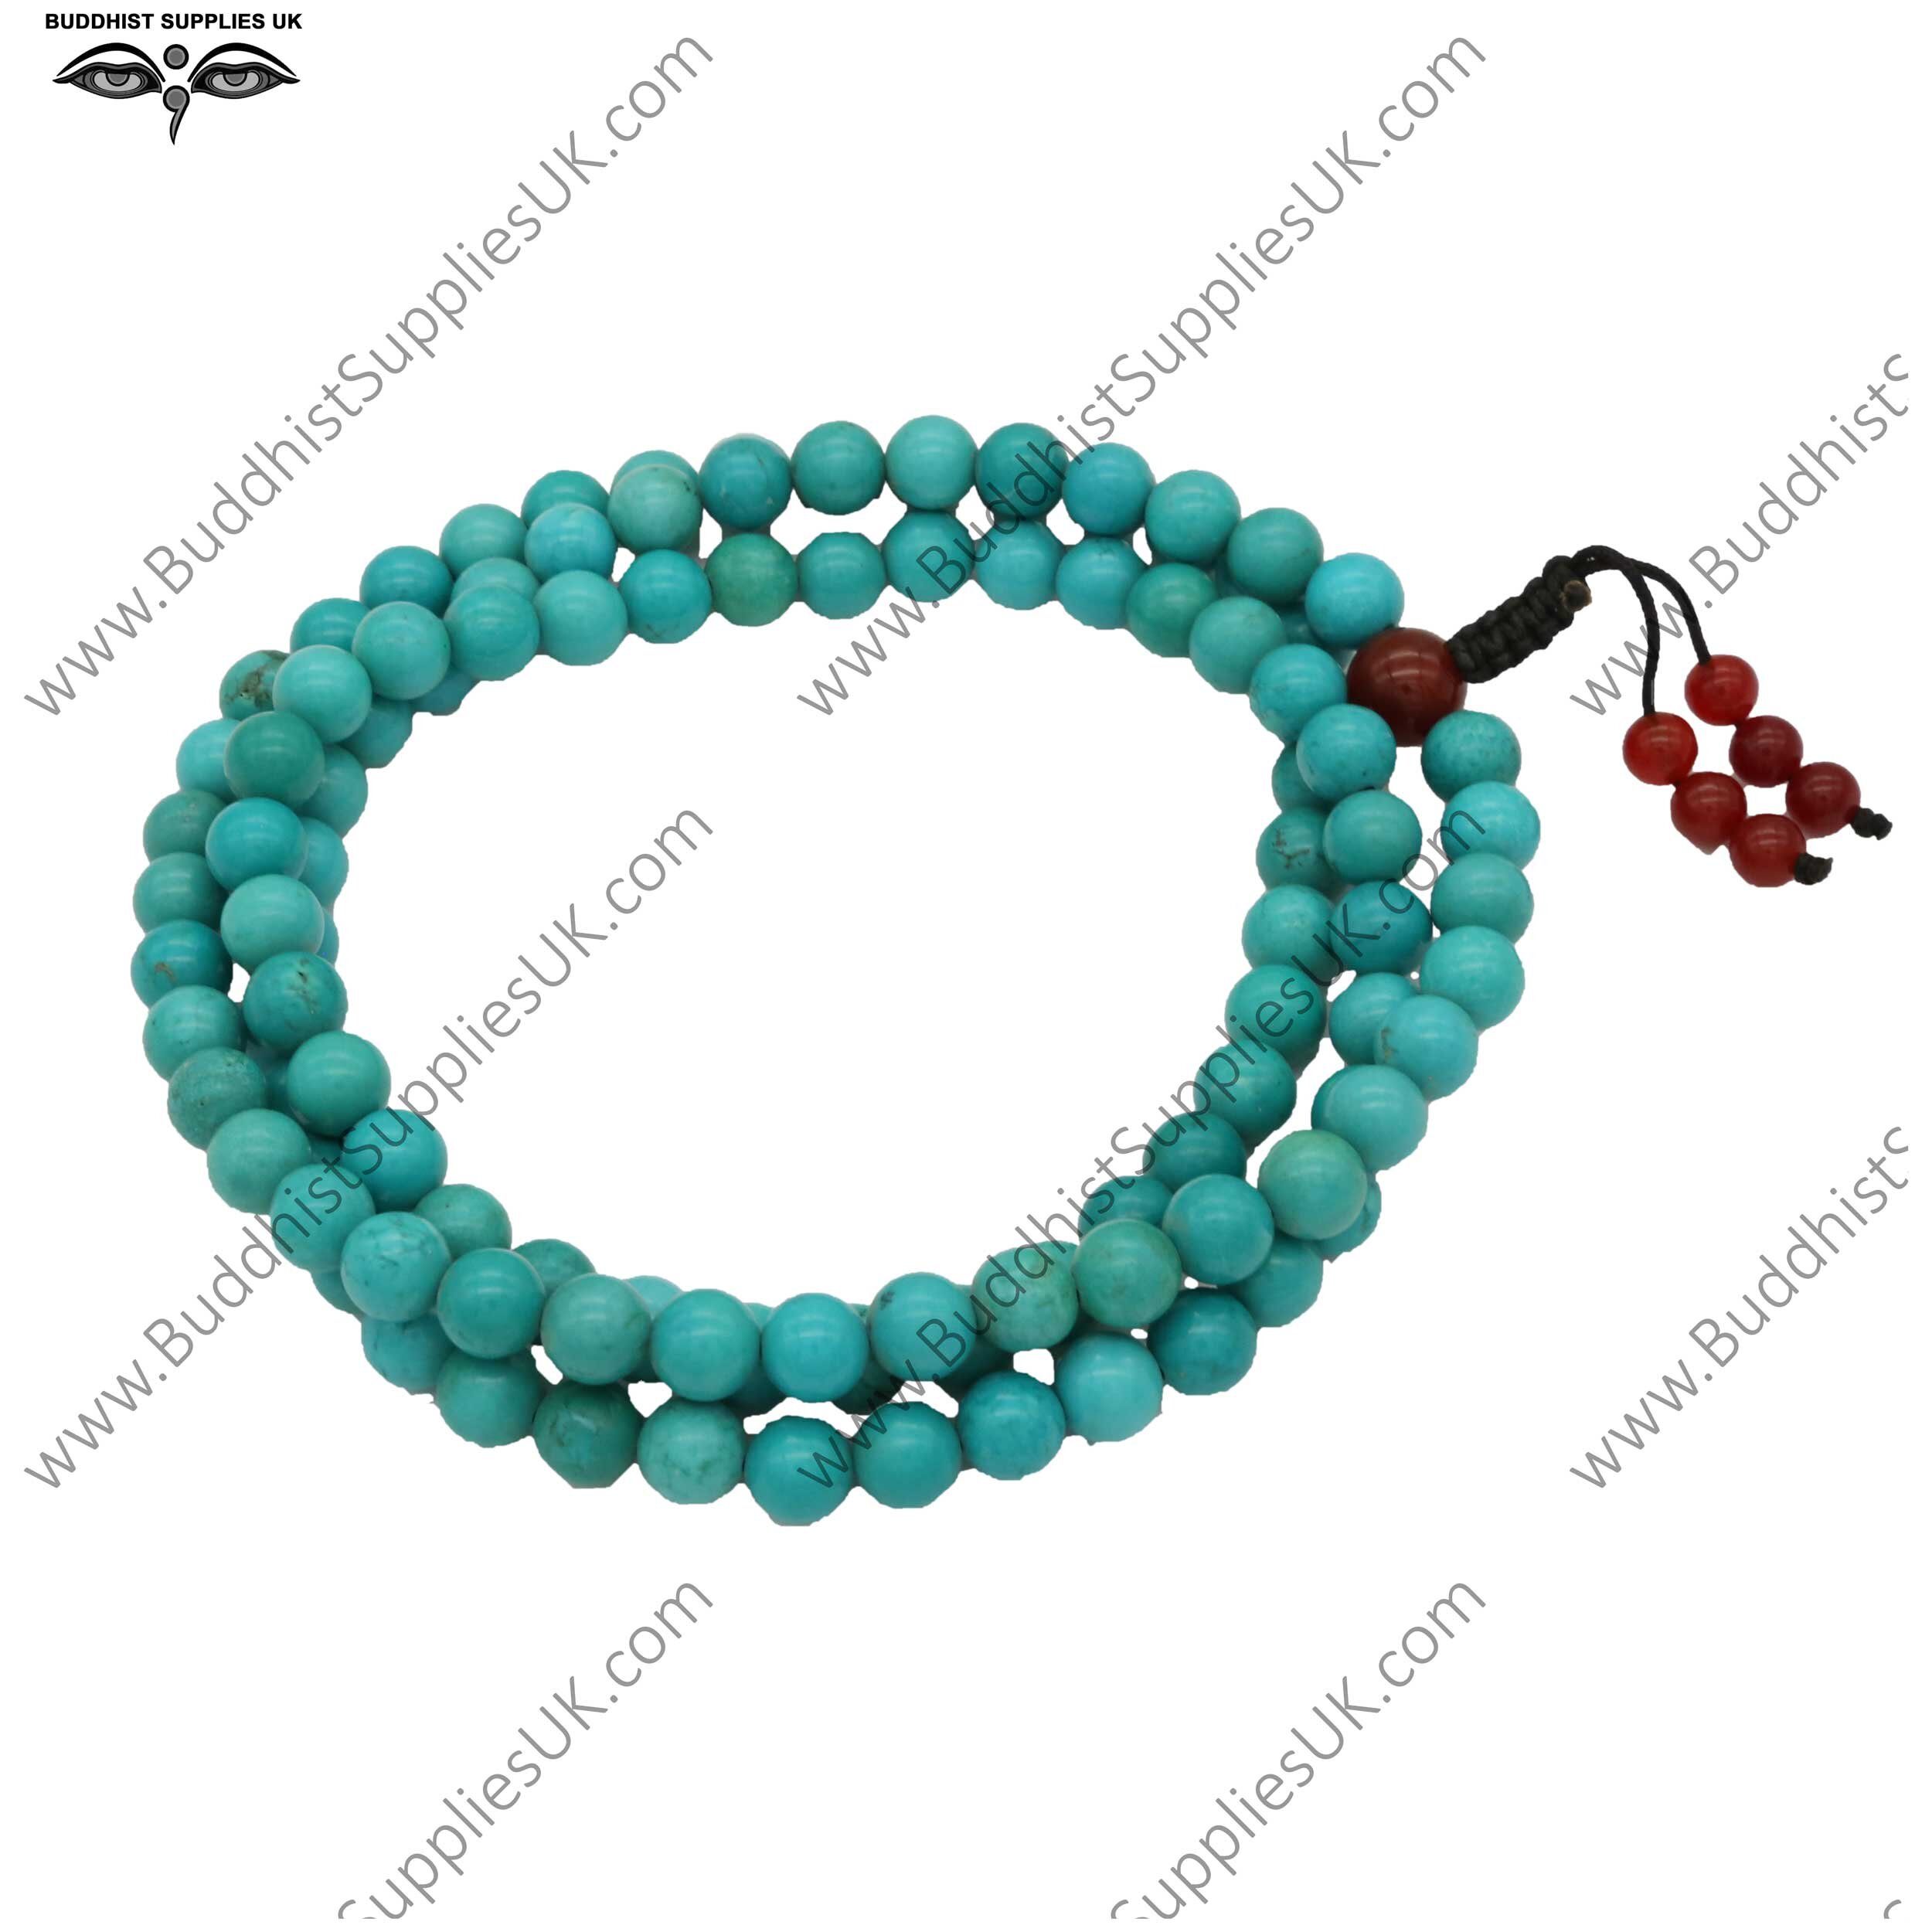 Sandalwood Wrist Mala Beads  Tibetan Buddhist Wrist Mala